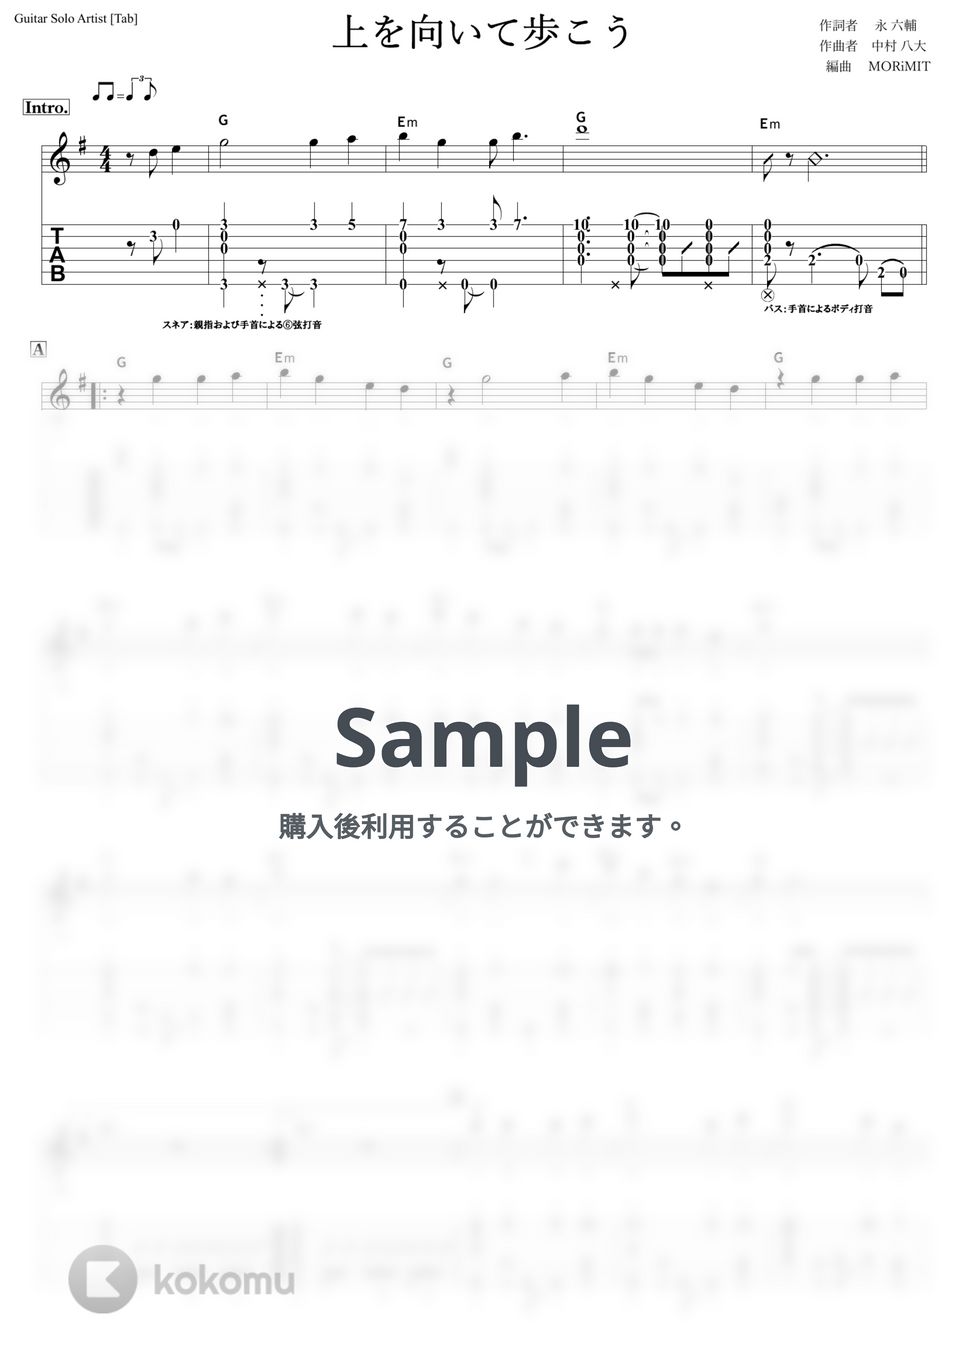 坂本九 - 上を向いて歩こう (ソロギター,スラム奏法,坂本九) by MORiMIT